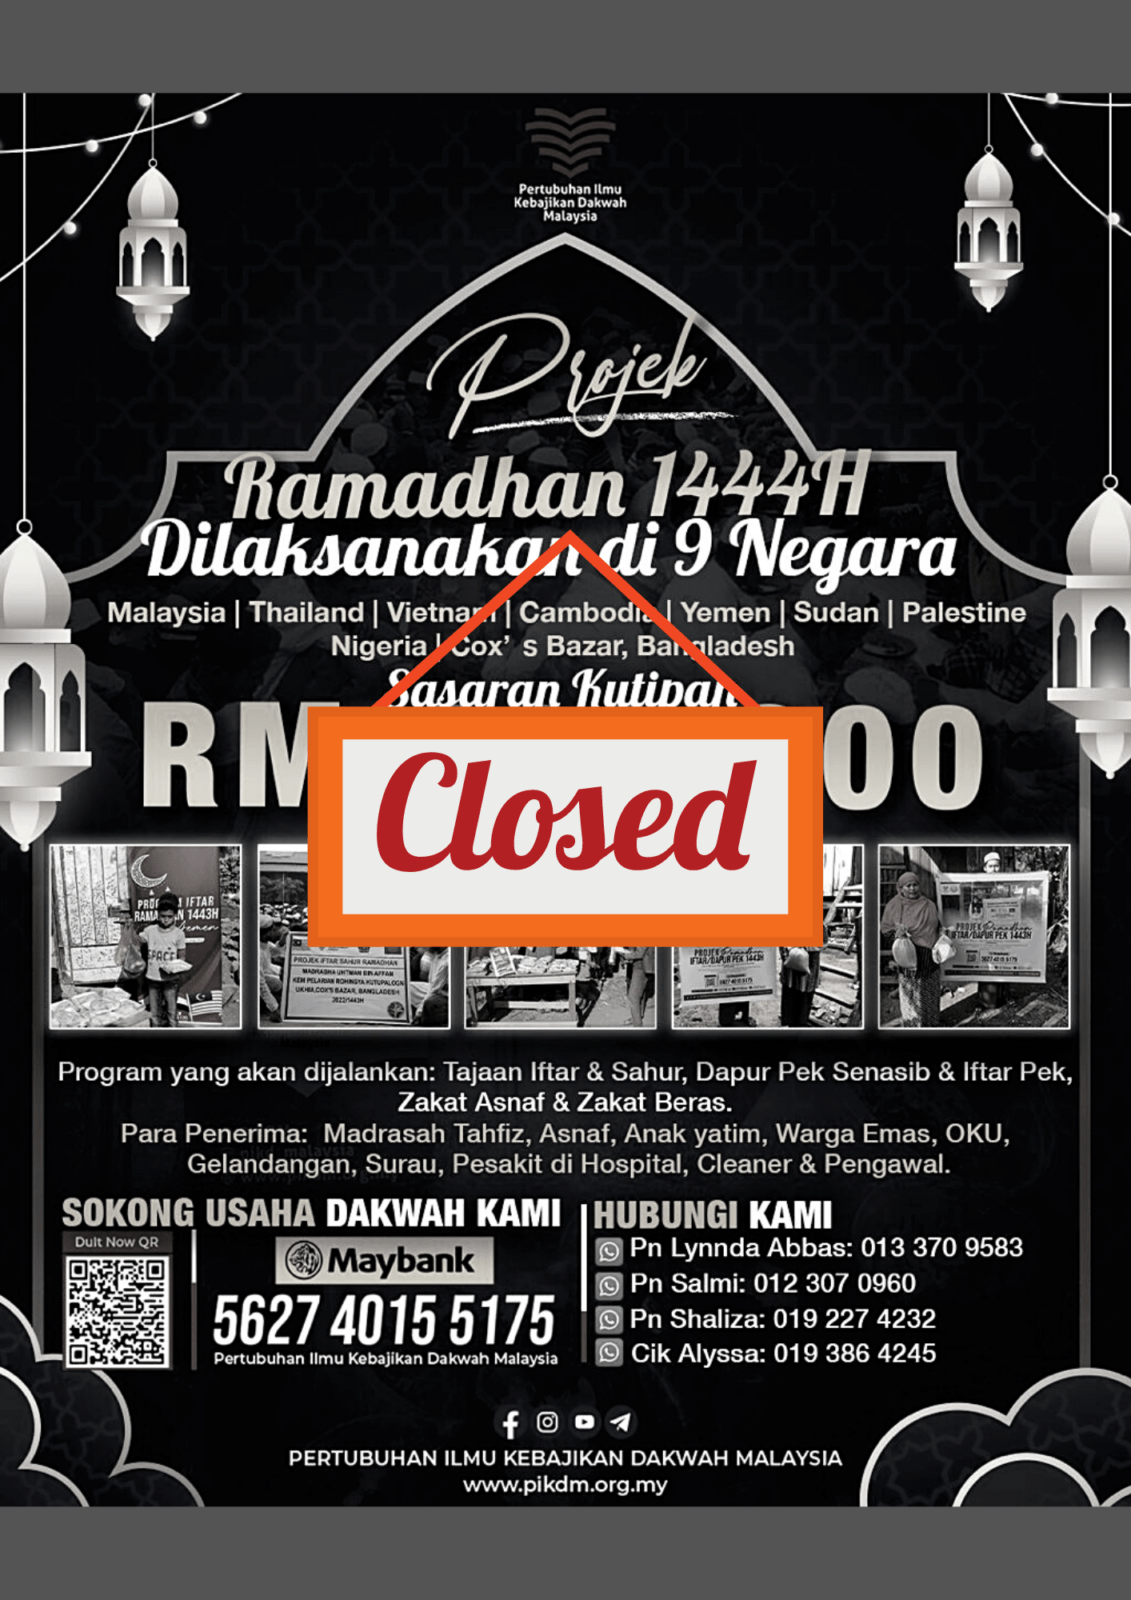 Projek Ramadan 1444h Closed